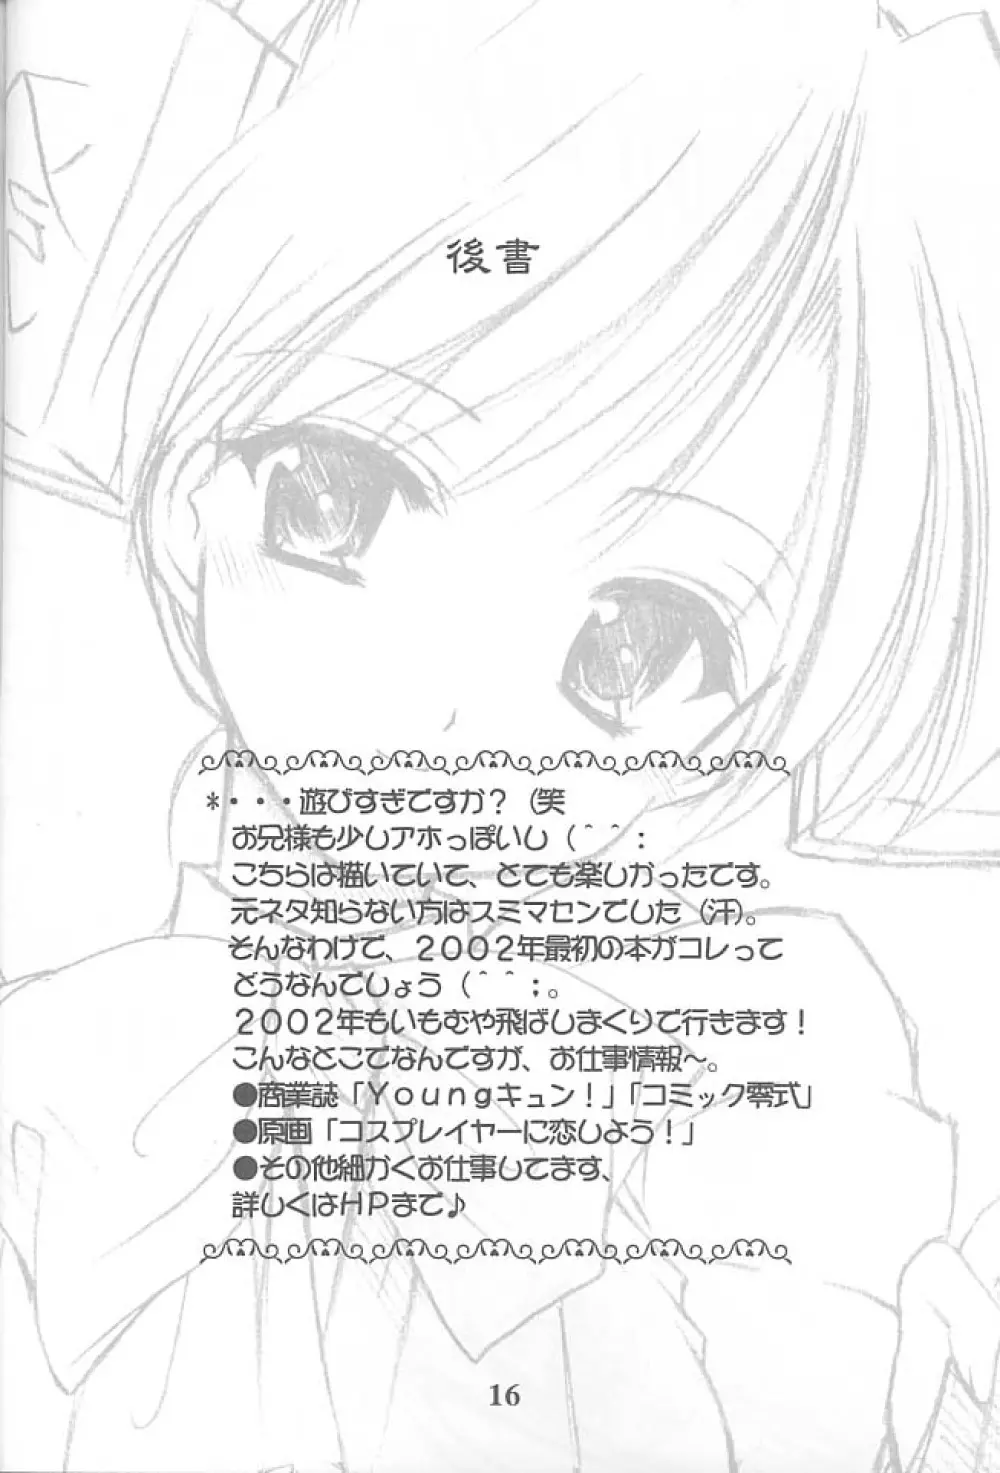 お兄様へ…2.5 Sister Princess “Sakuya” Book No.3 15ページ